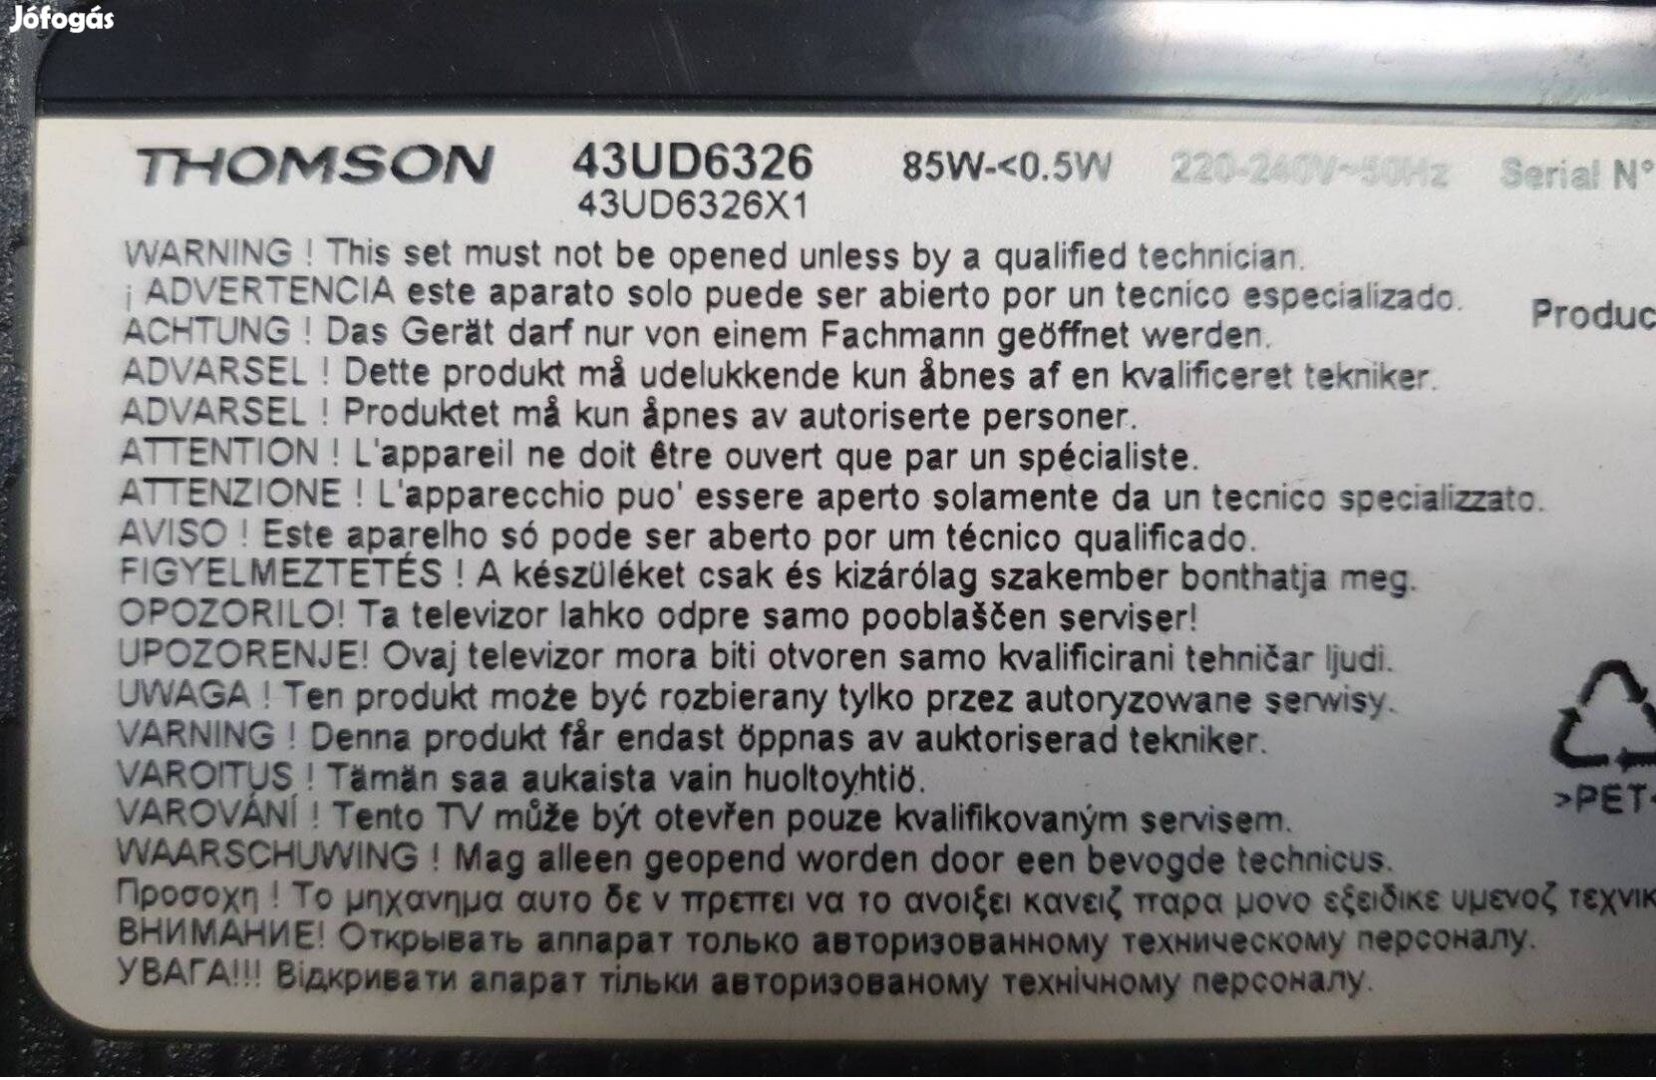 Thomson 43UD6326 LED tv panelek 55T32-COF Auo